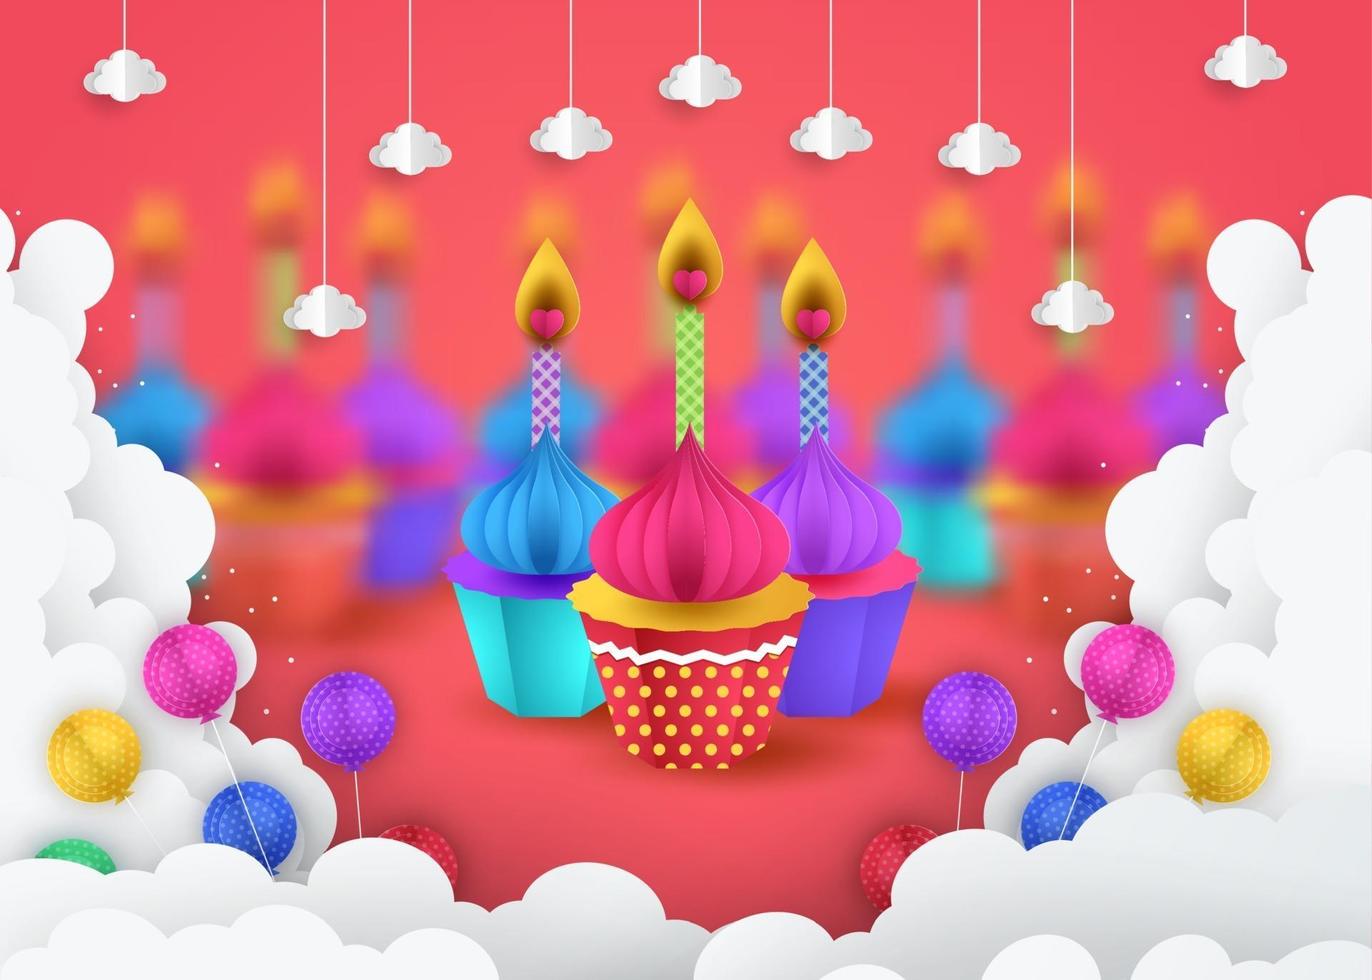 Papierkunst von Cupcakes, alles Gute zum Geburtstagfeierkunst und Illustration. vektor